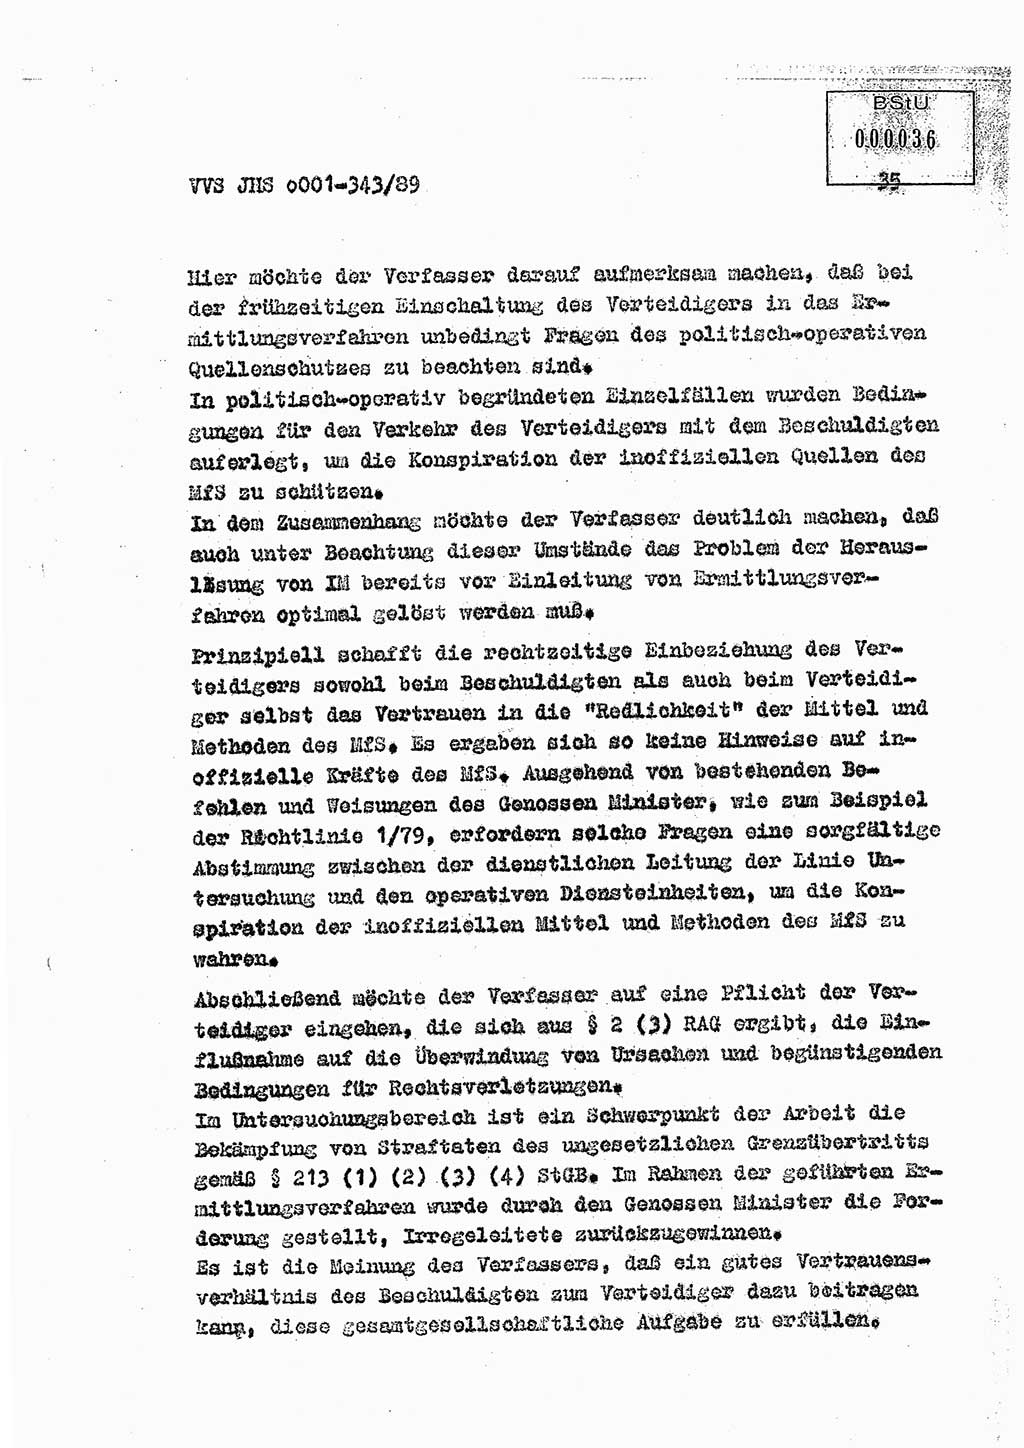 Diplomarbeit Offiziersschüler Axel Henschke (HA Ⅸ/9), Ministerium für Staatssicherheit (MfS) [Deutsche Demokratische Republik (DDR)], Juristische Hochschule (JHS), Vertrauliche Verschlußsache (VVS) o001-343/89, Potsdam 1989, Seite 35 (Dipl.-Arb. MfS DDR JHS VVS o001-343/89 1989, S. 35)